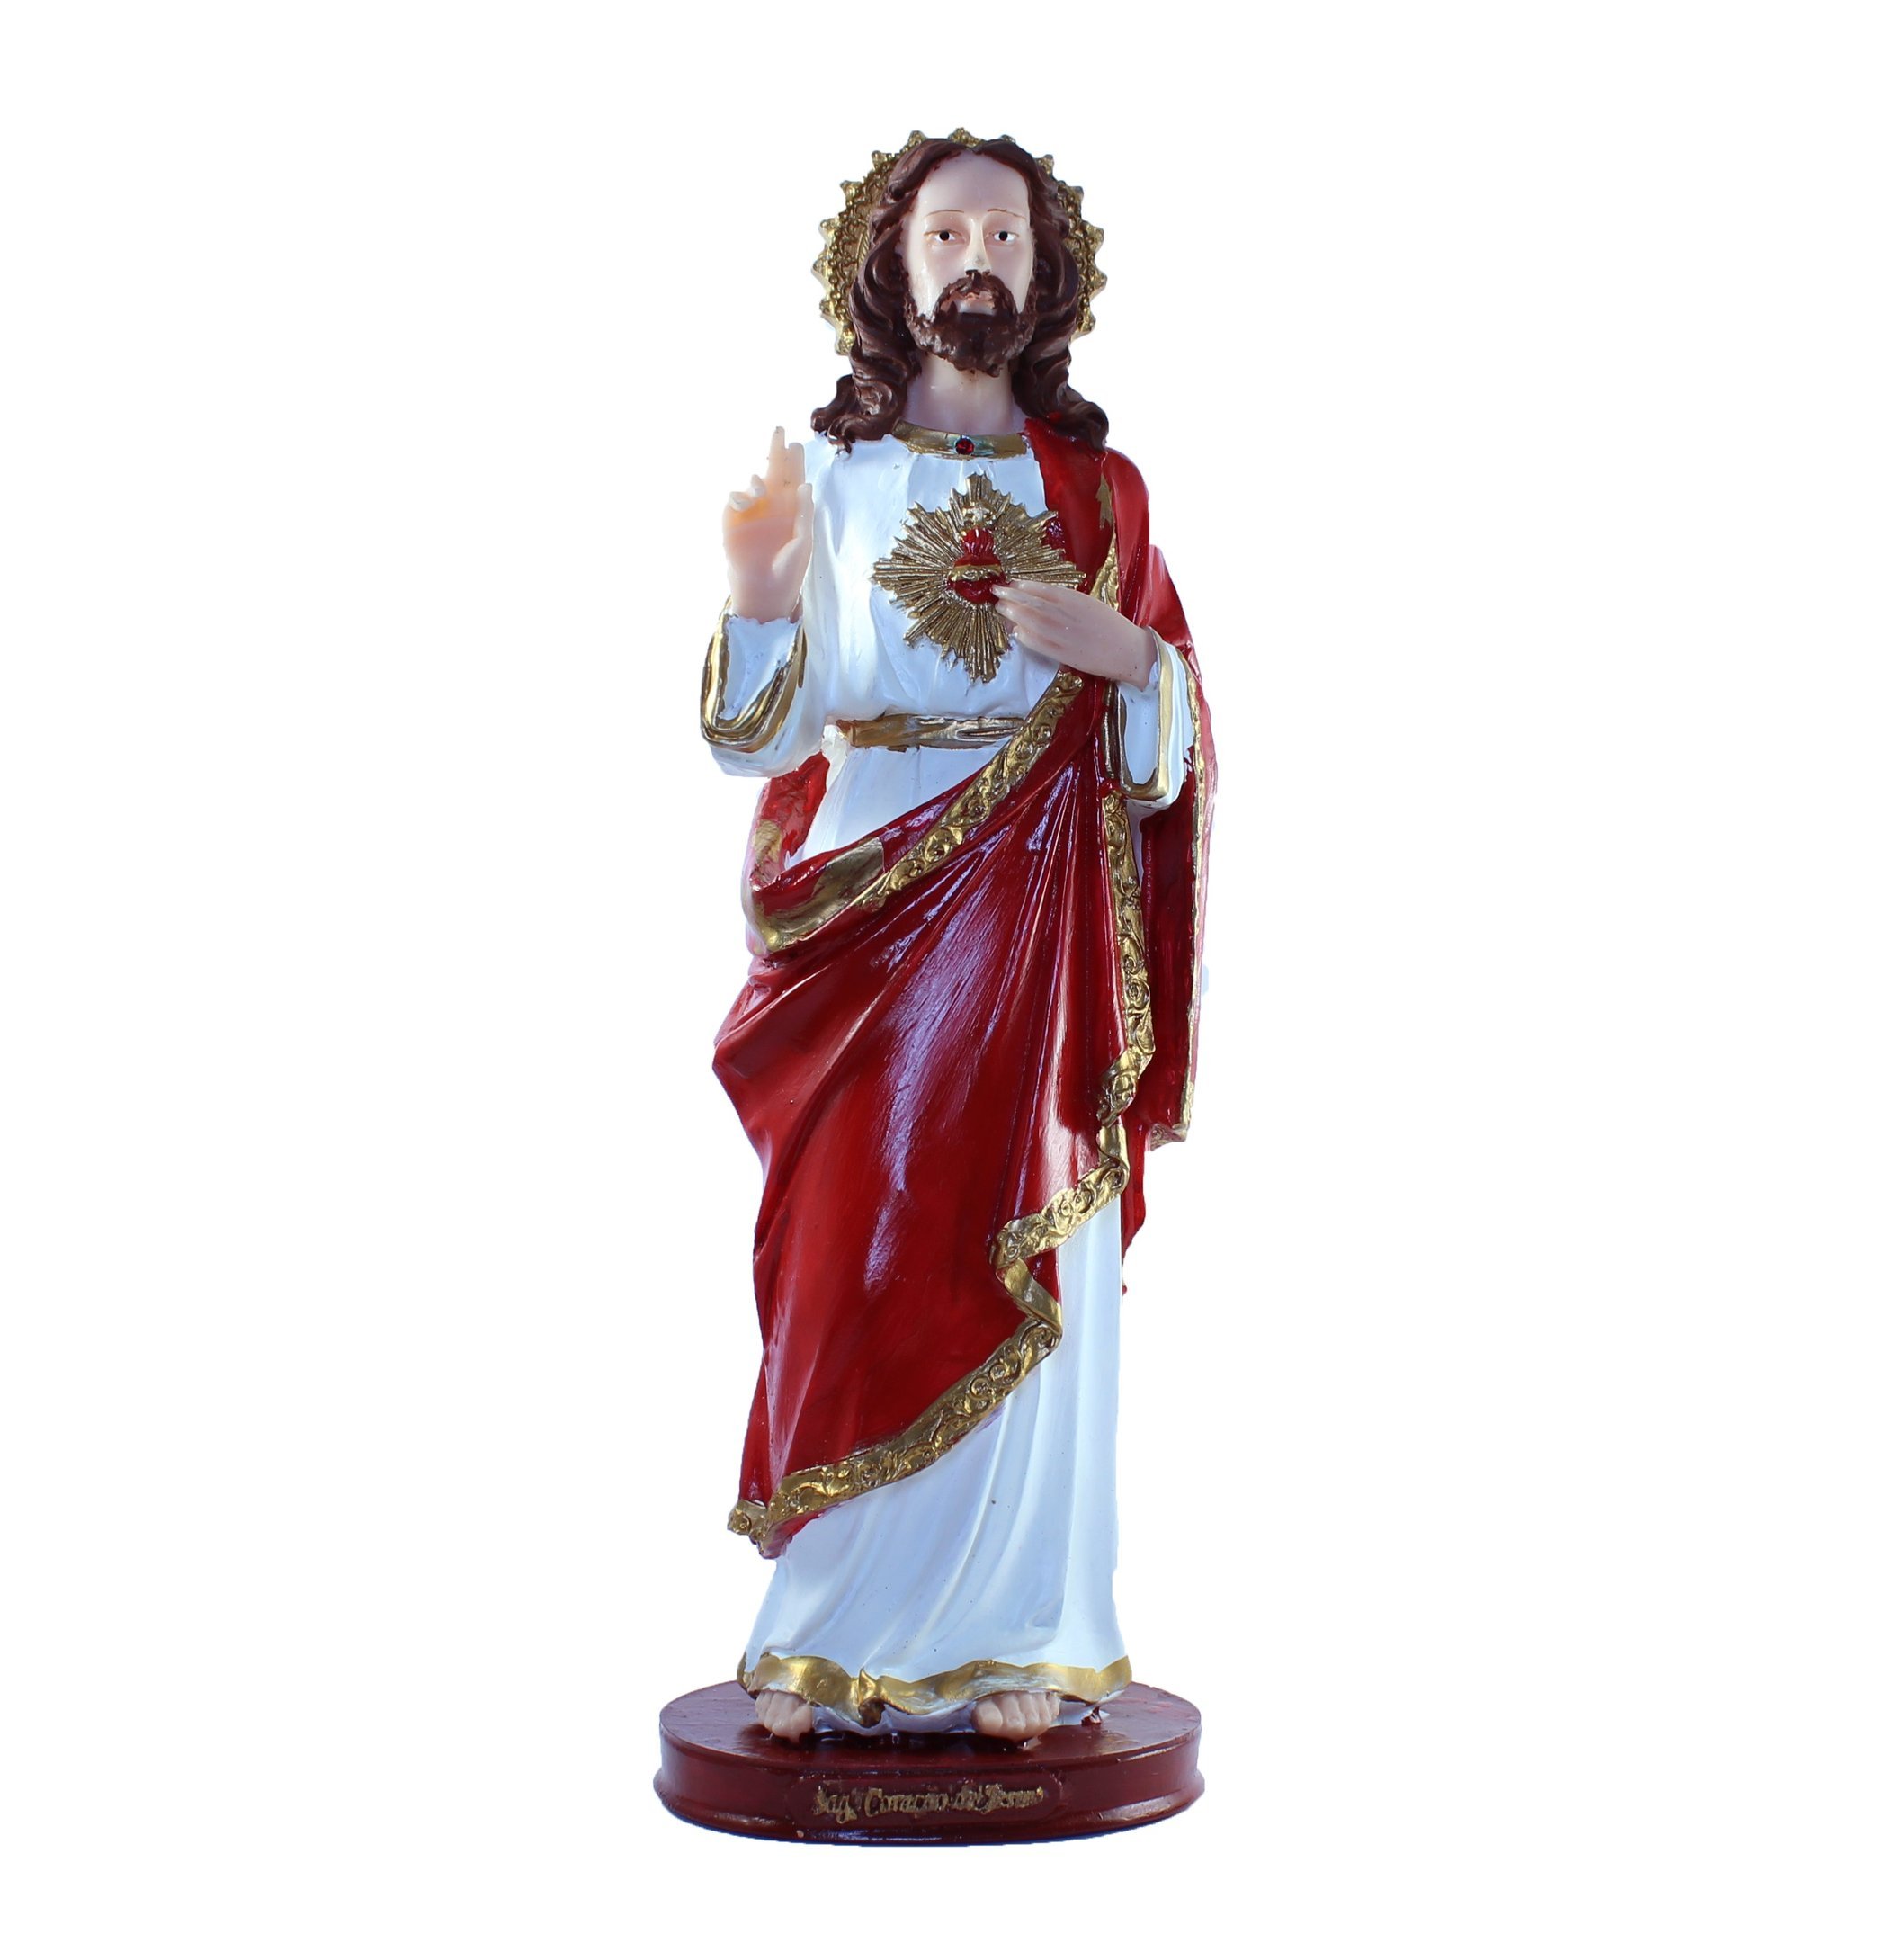 Escultura Sagrado Coração de Jesus 31 cm em resina